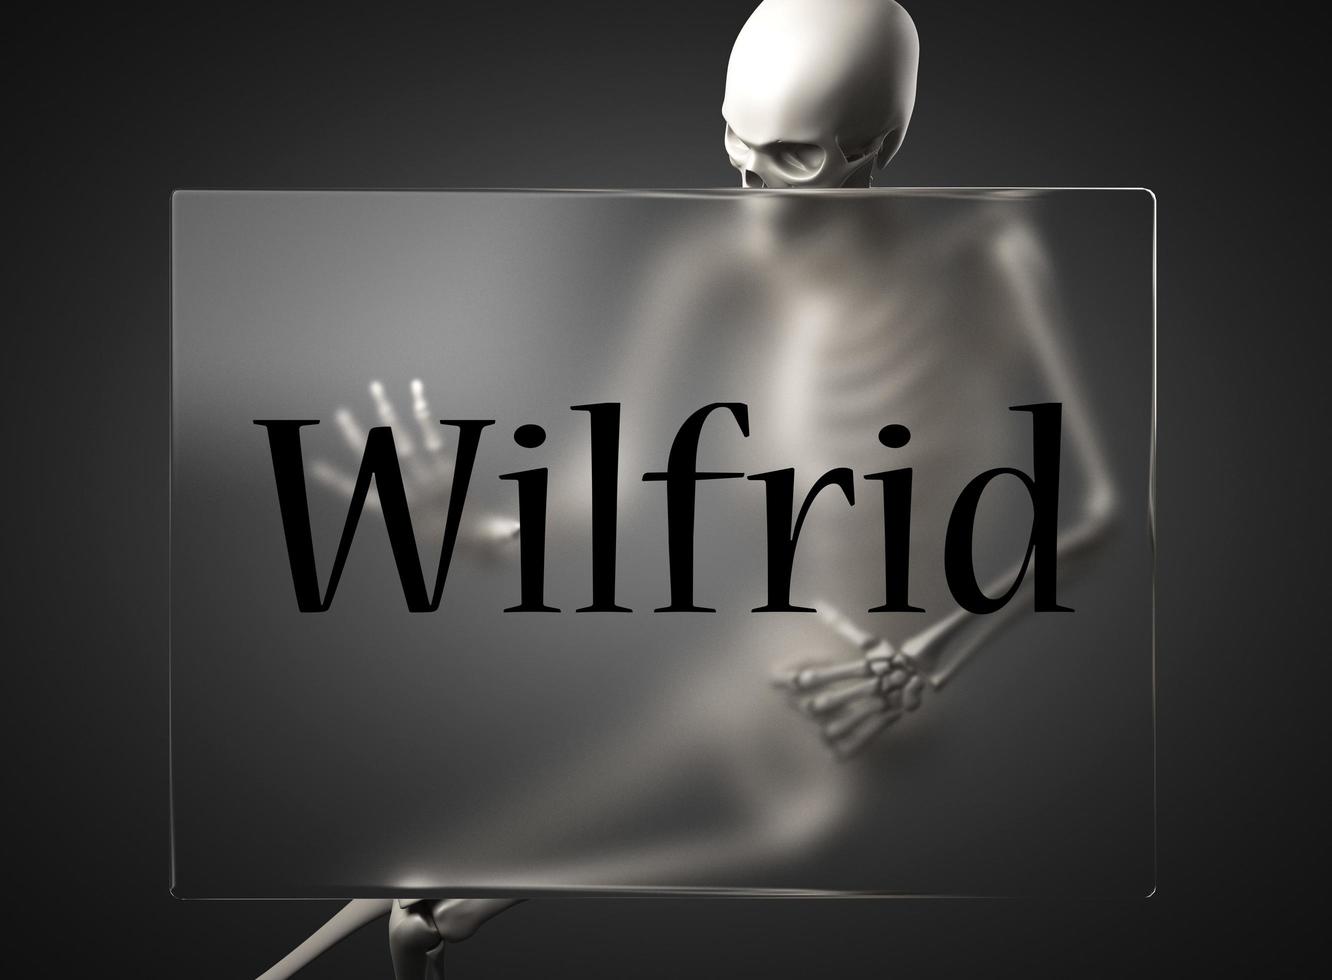 palabra de wilfrid sobre vidrio y esqueleto foto